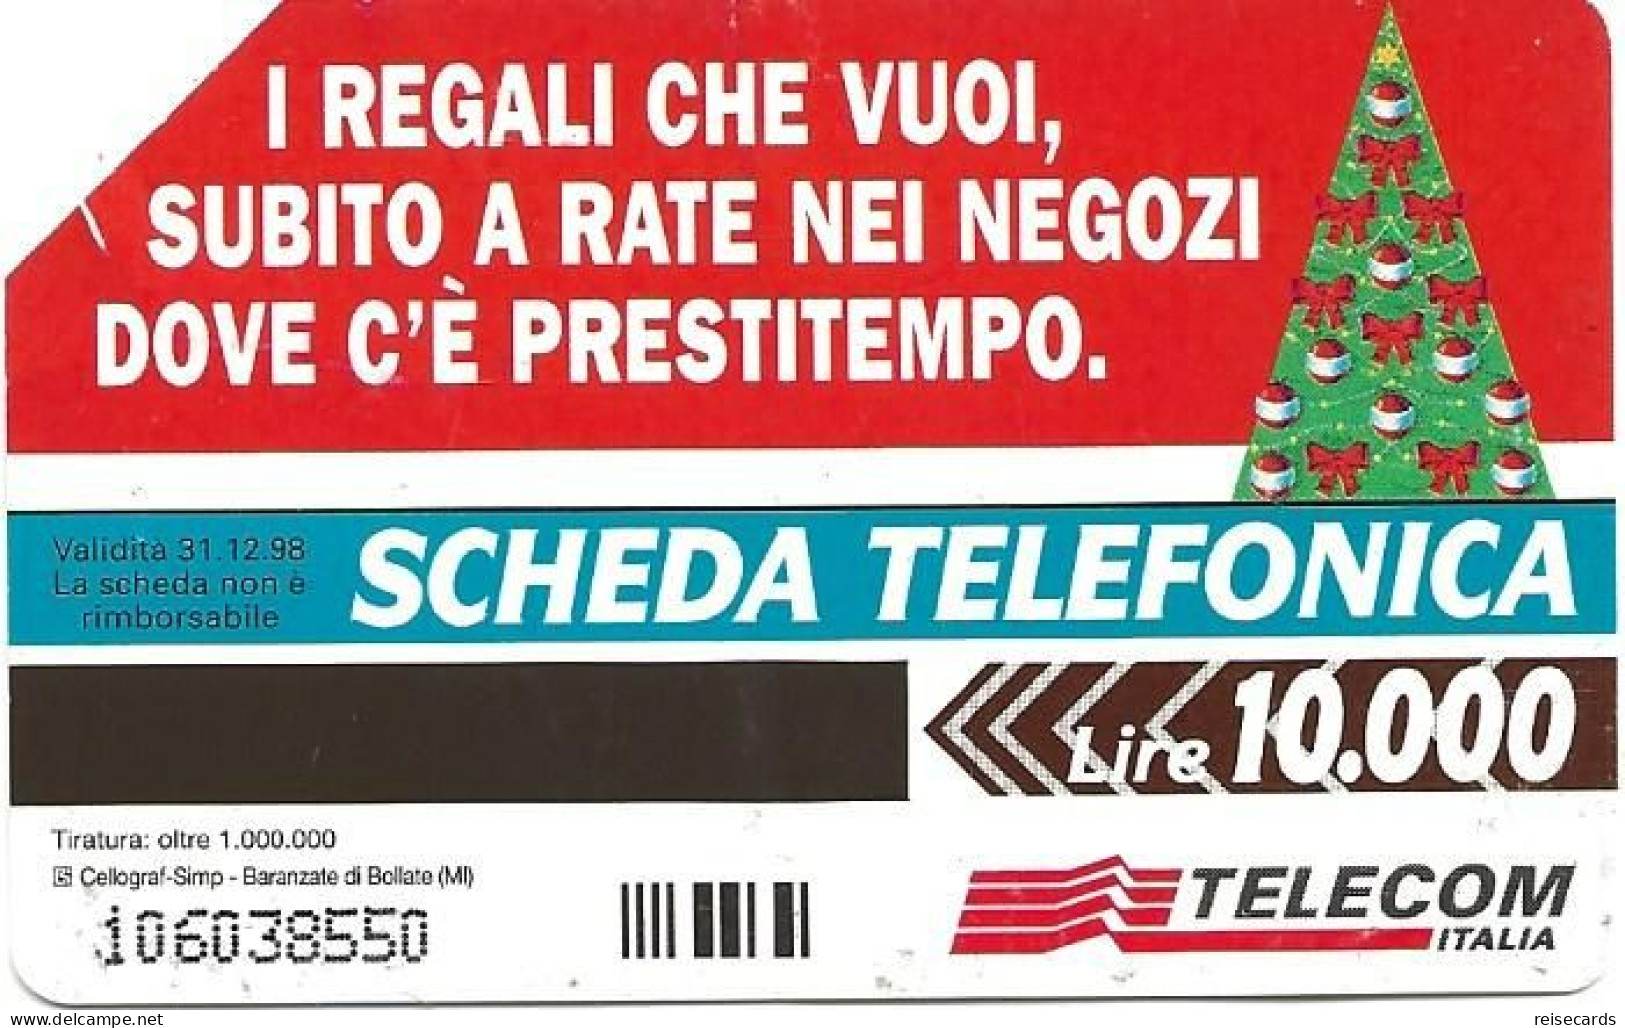 Italy: Telecom Italia - Buon Natale - Pubbliche Pubblicitarie